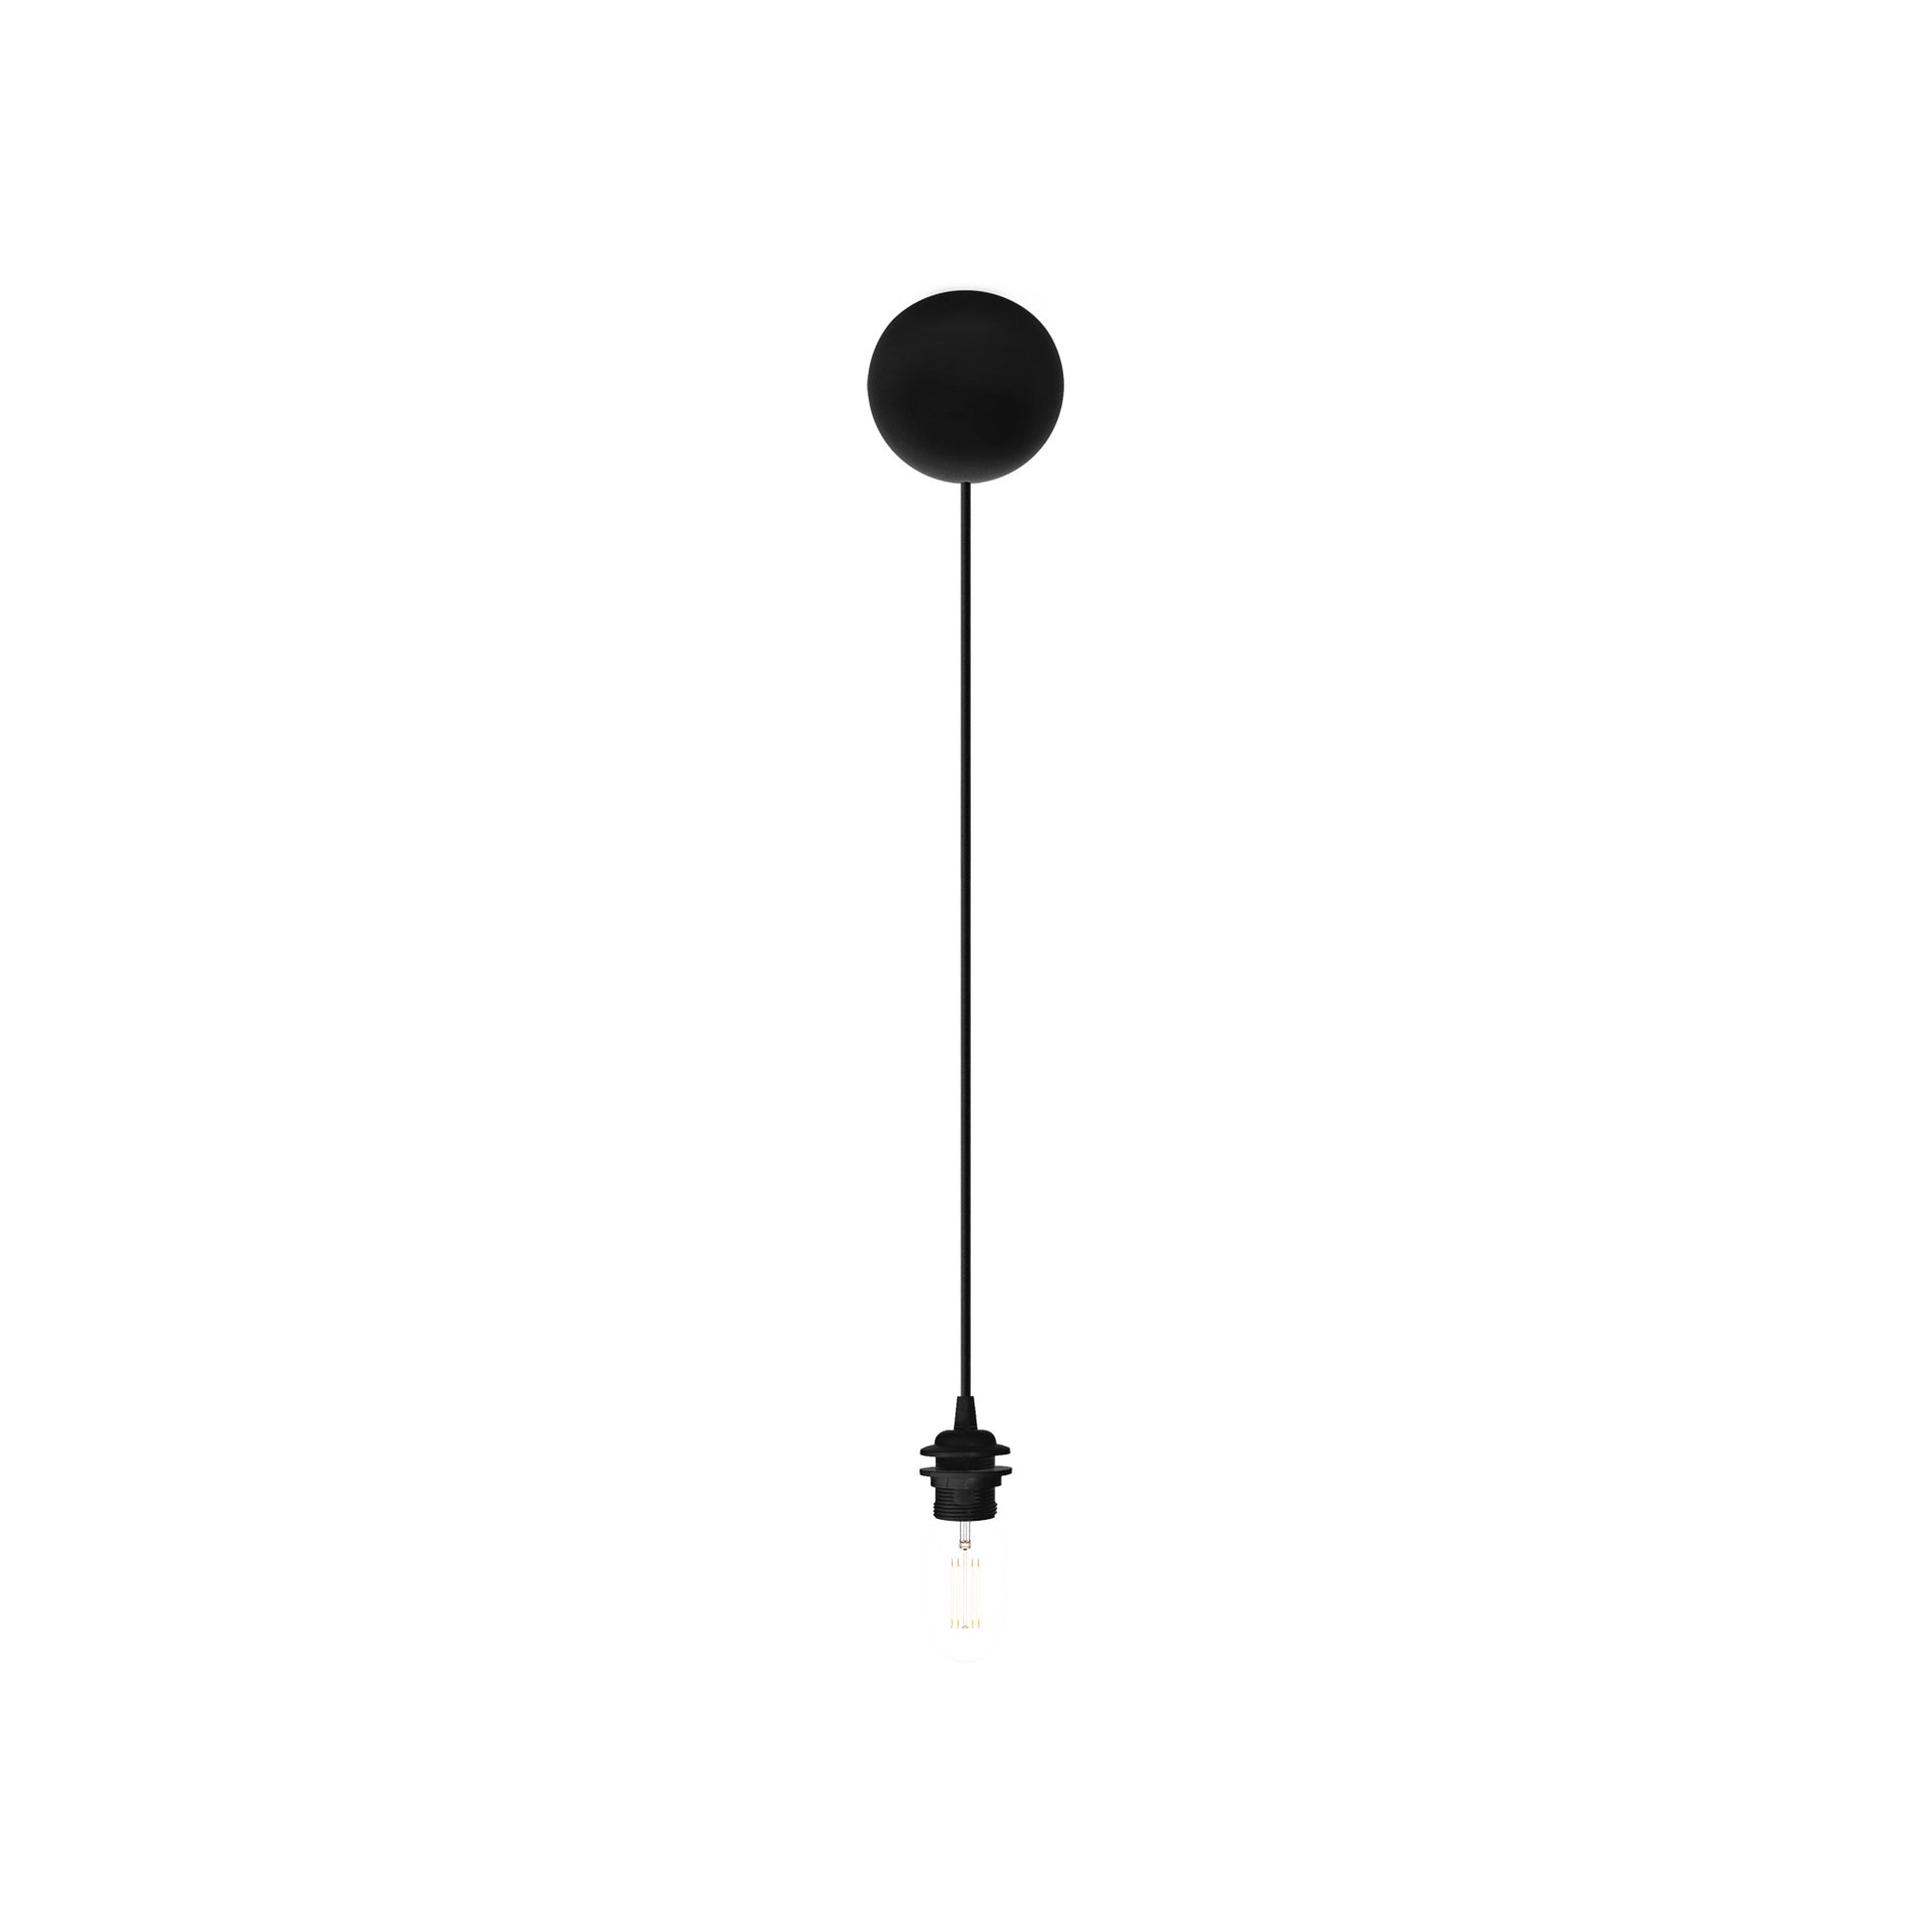 Cannonball svart taklamphållare i silikon med sladdgömma från danska Umage